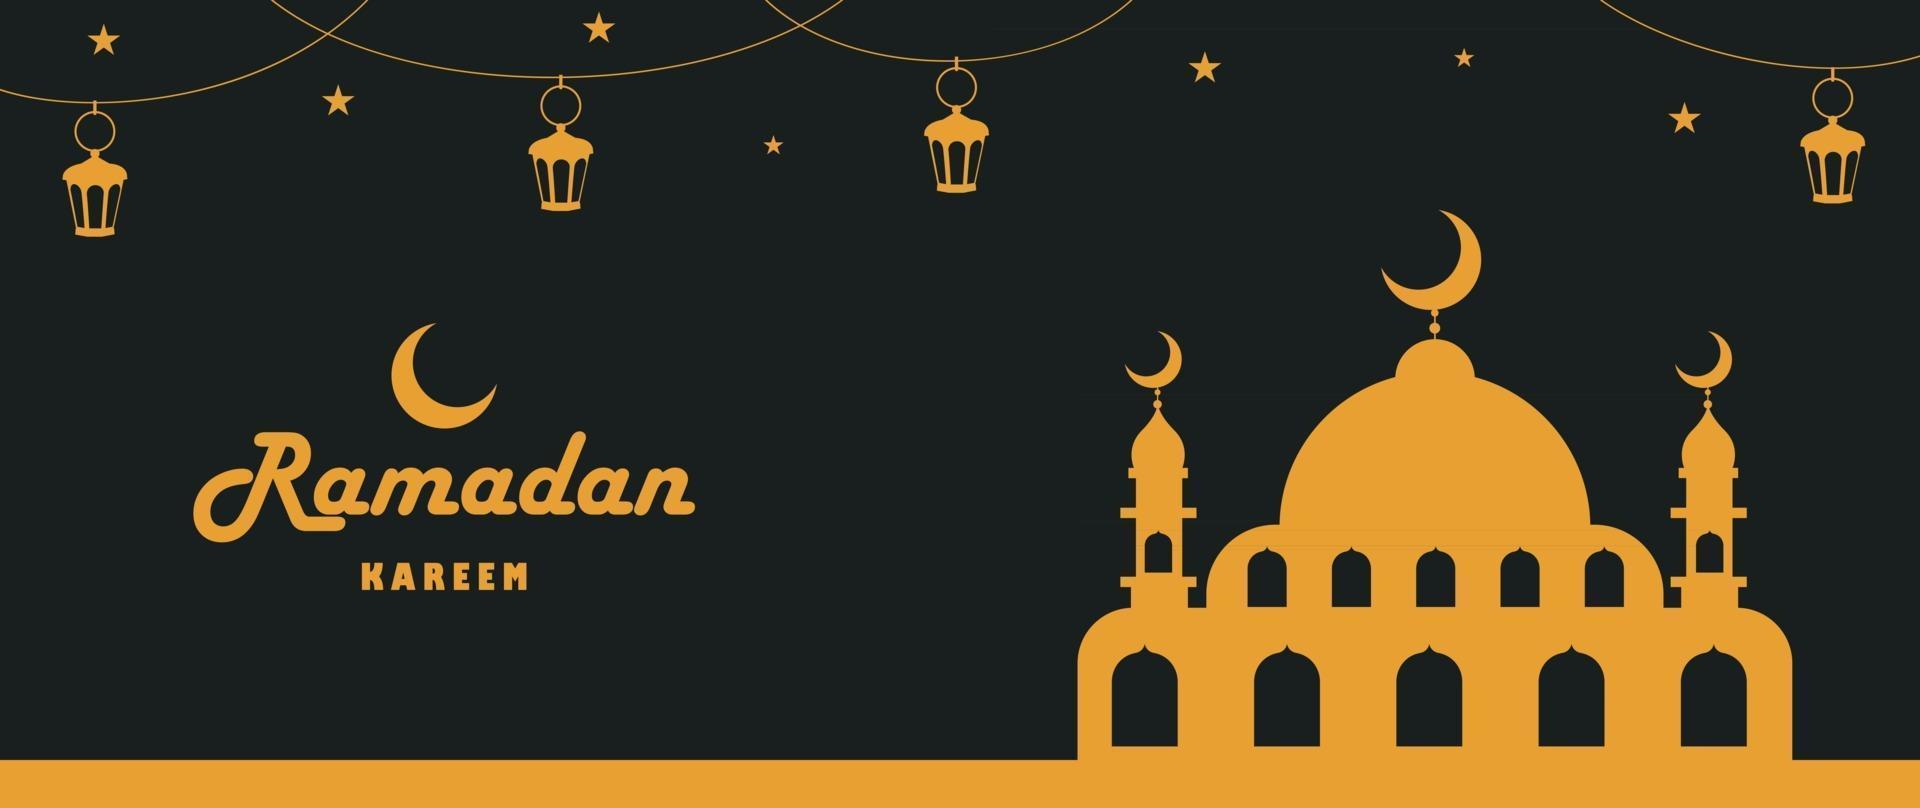 hand getrokken illustratie voor ramadan kareem en islamitische cultuur vector